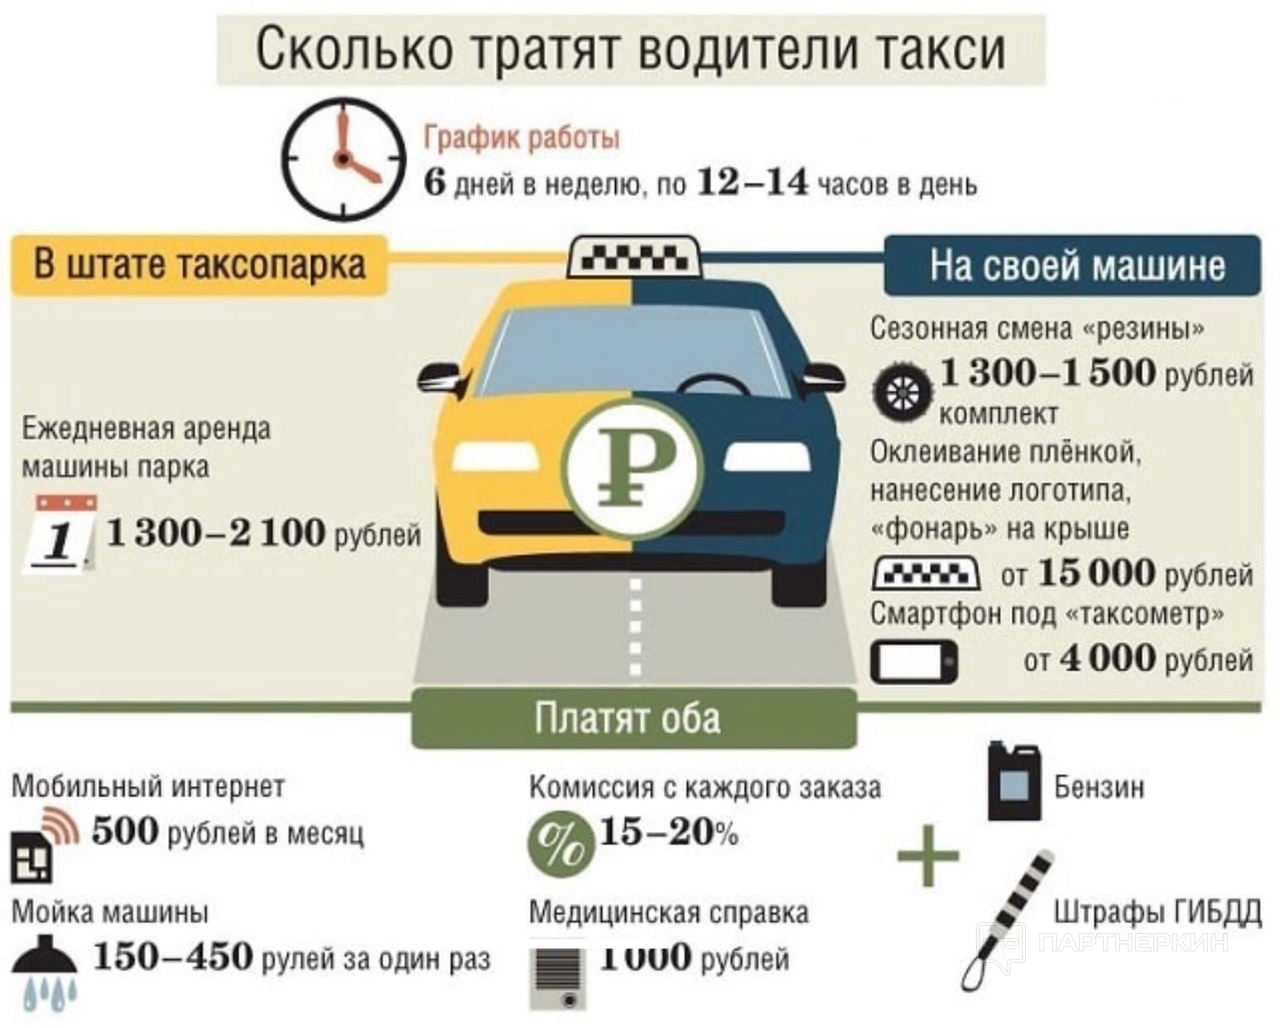 Документы водителя такси. Каким машинам Монжа таксават. Сколько будет стоить такси. Количество таксистов в Москве. Своя машина в такси.